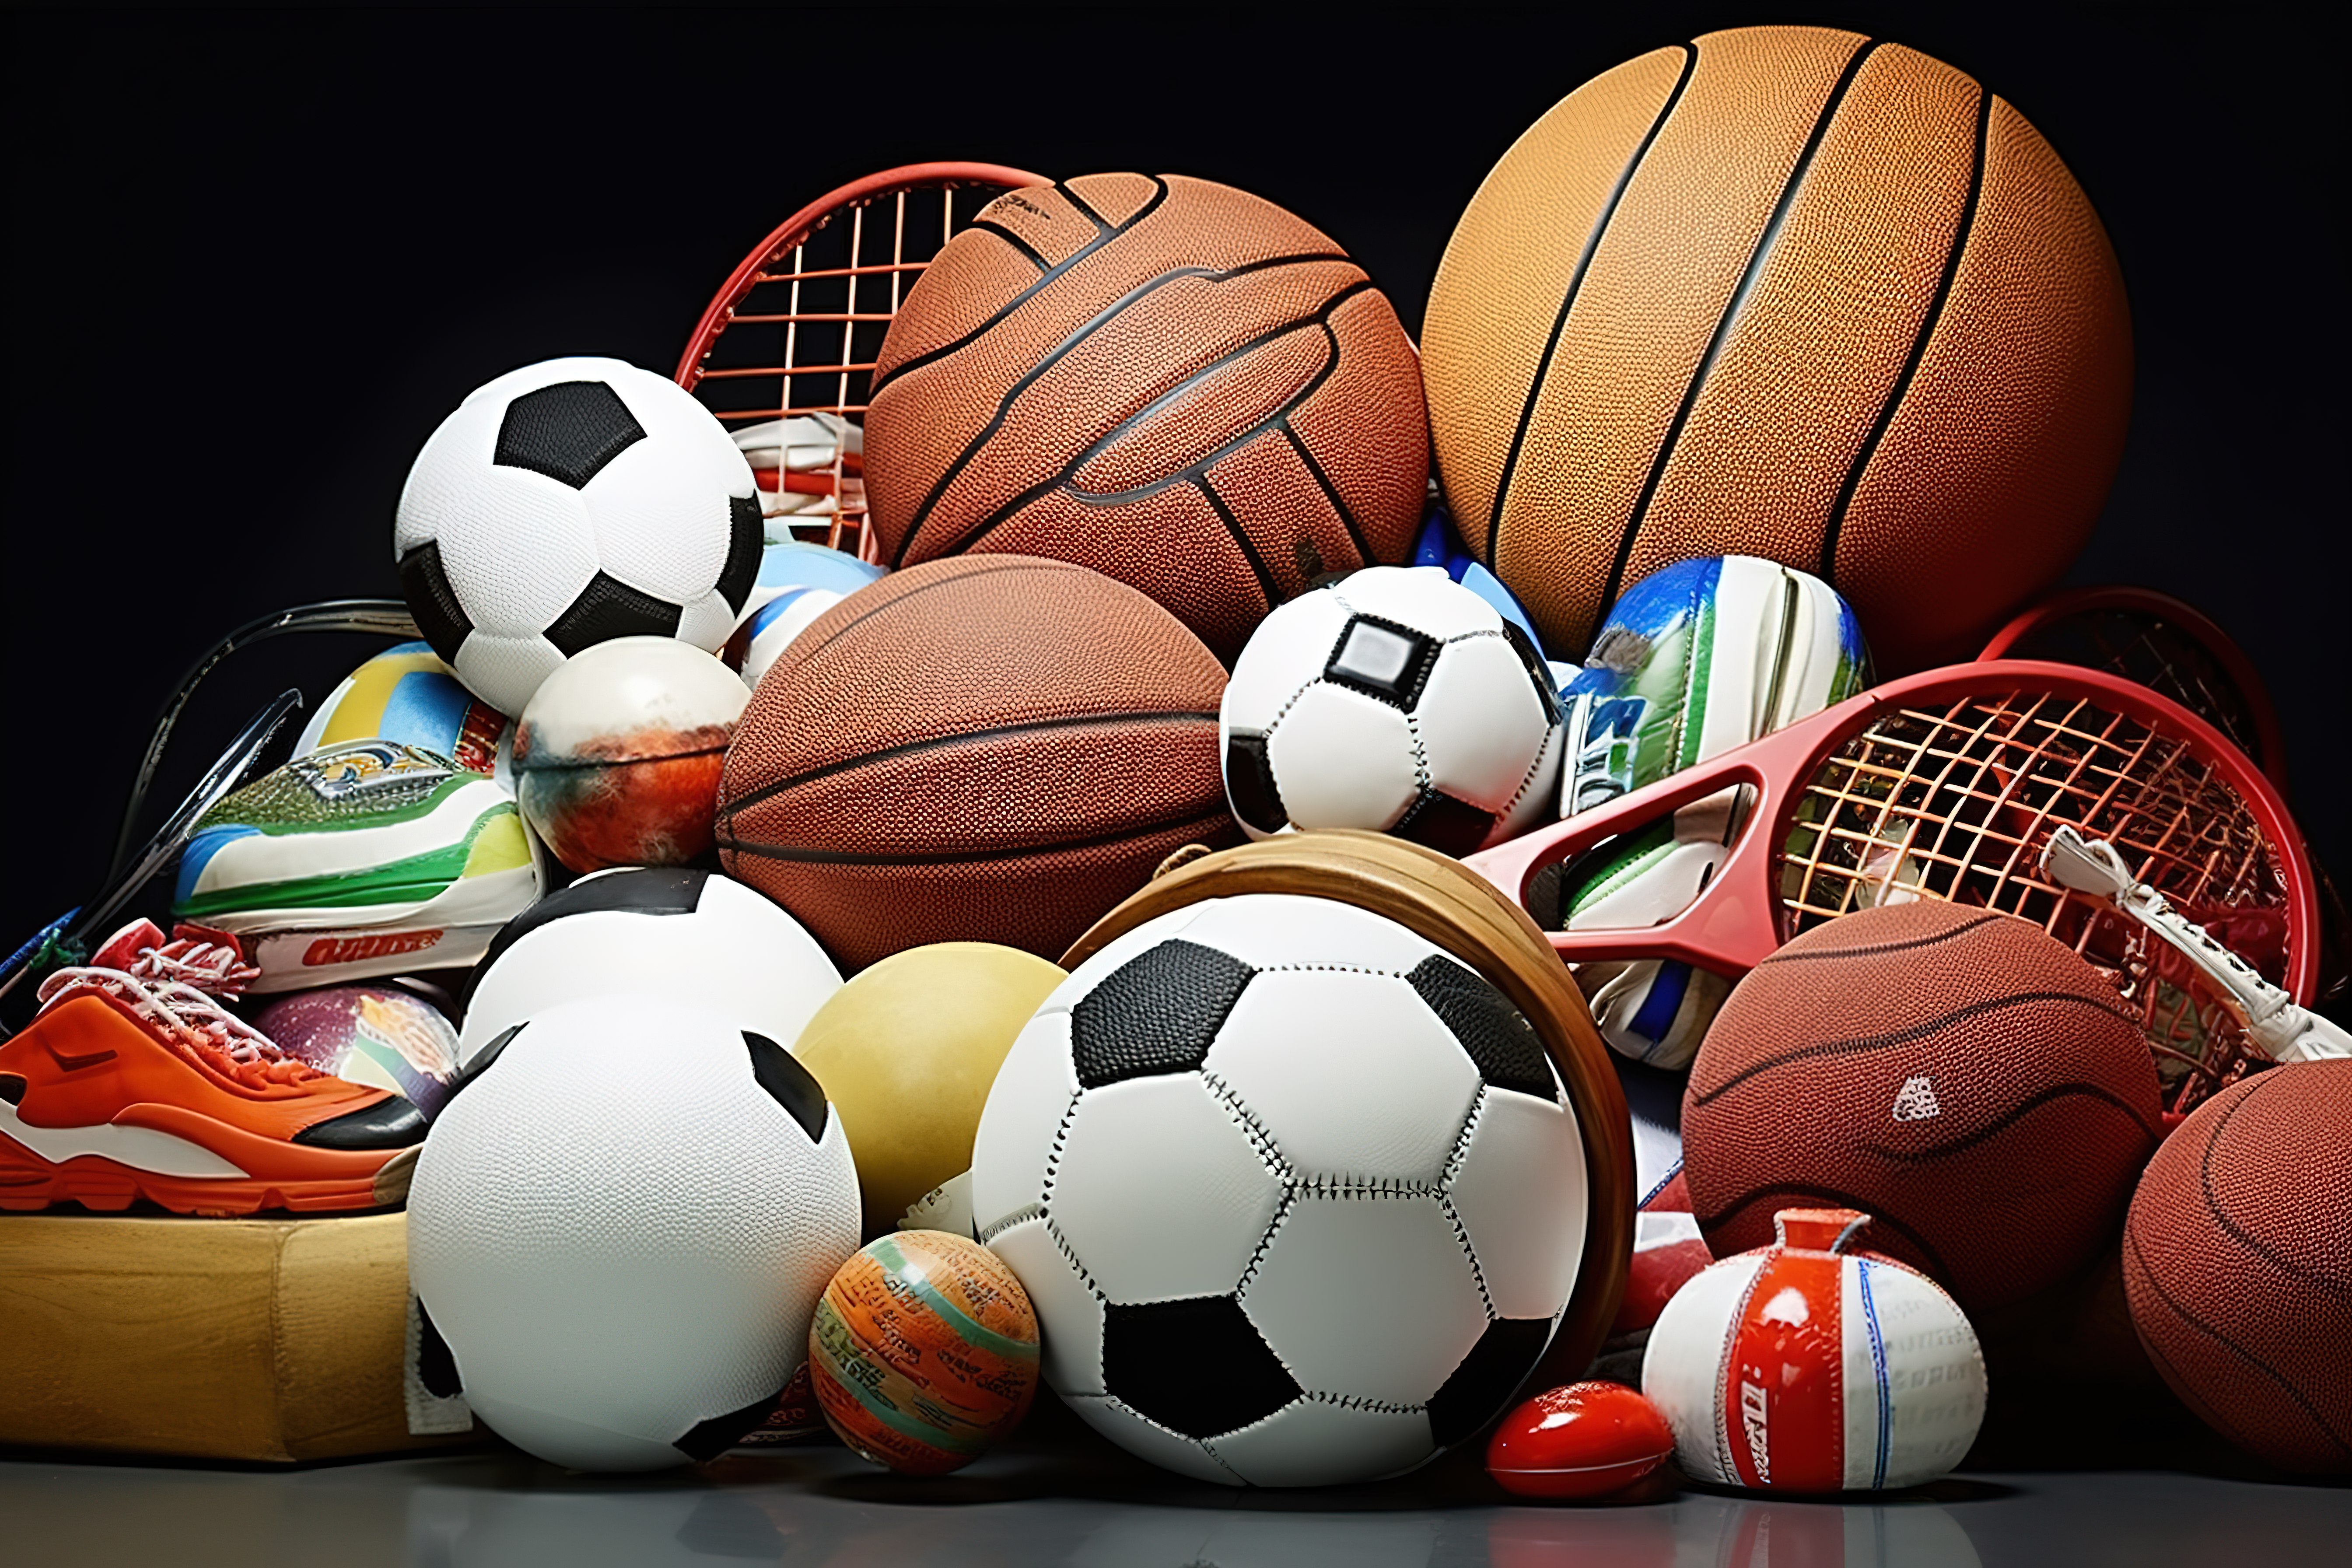 其他体育用品和球位于白色表面上图片